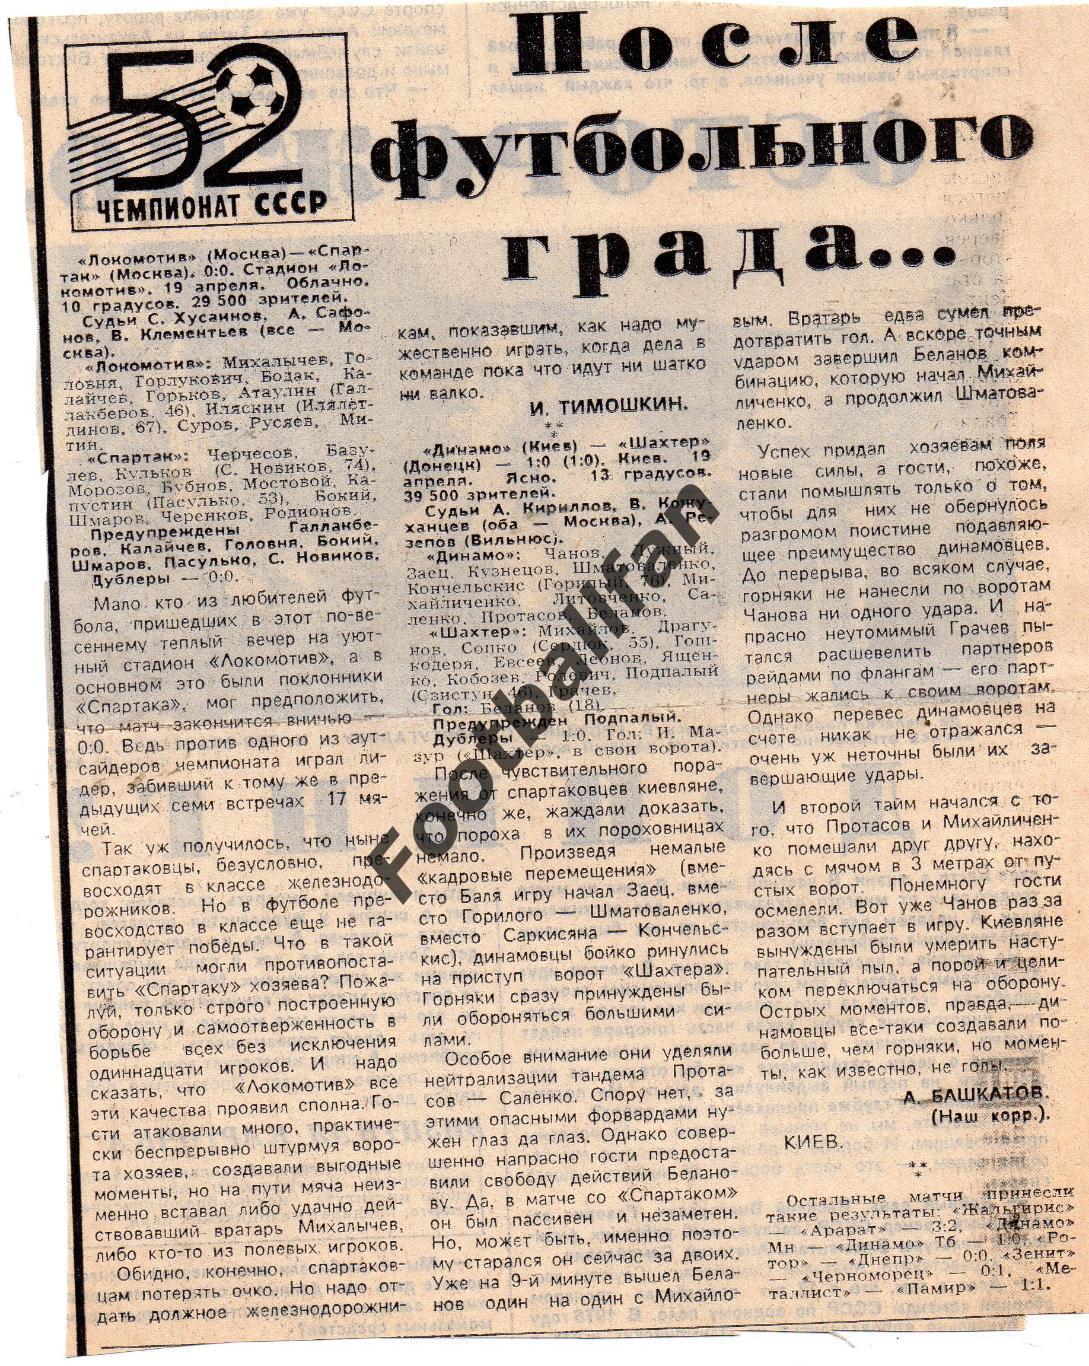 Динамо Киев - Шахтер Донецк 19.04.1989.